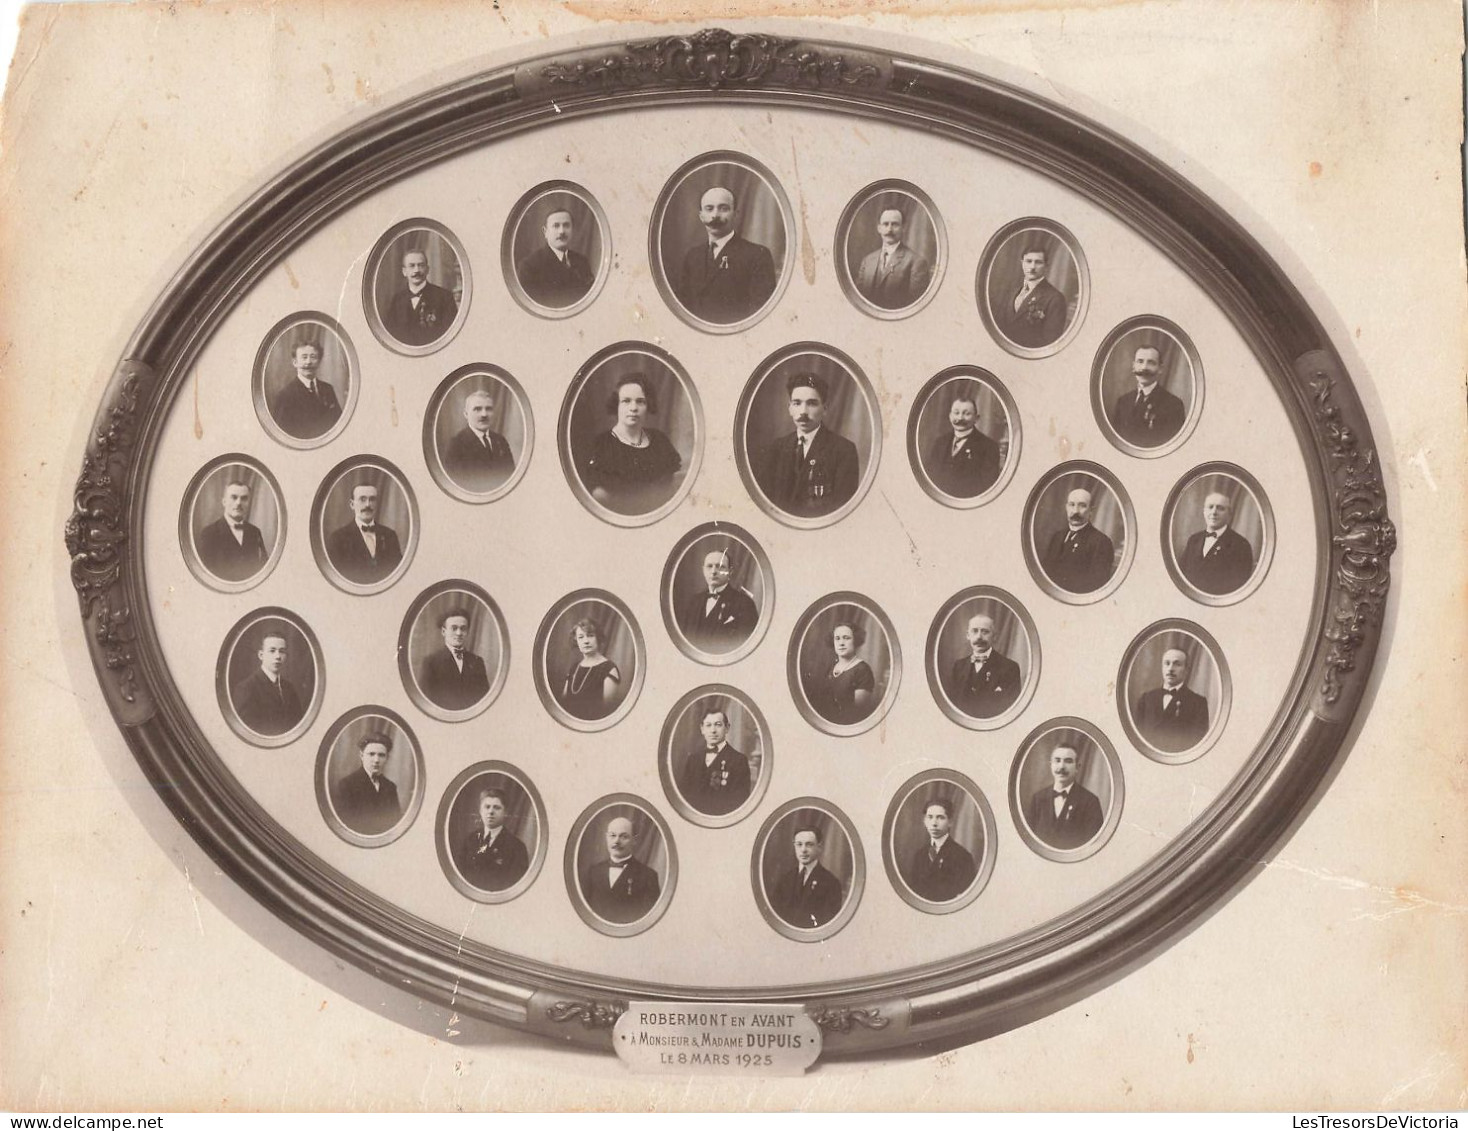 Photographie Originale  - Photo Des Homme D'une Famille Dans Un Cadre  - Robermont En Avant - 8 Mars 1925 - Dupuis - Identified Persons